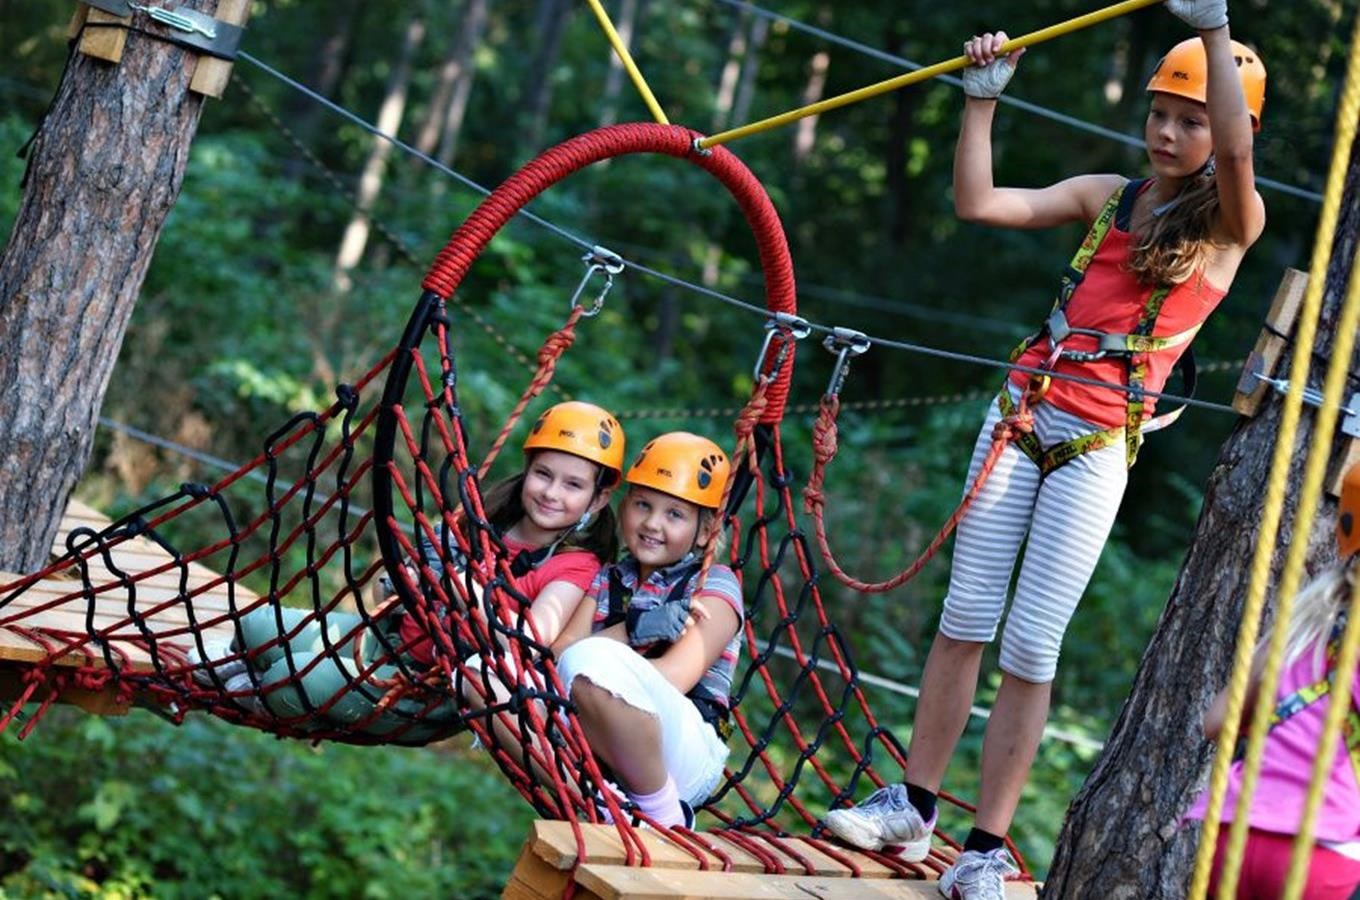 Adrenalinové dobrodružství v korunách stromů – lanové centrum Jungle park